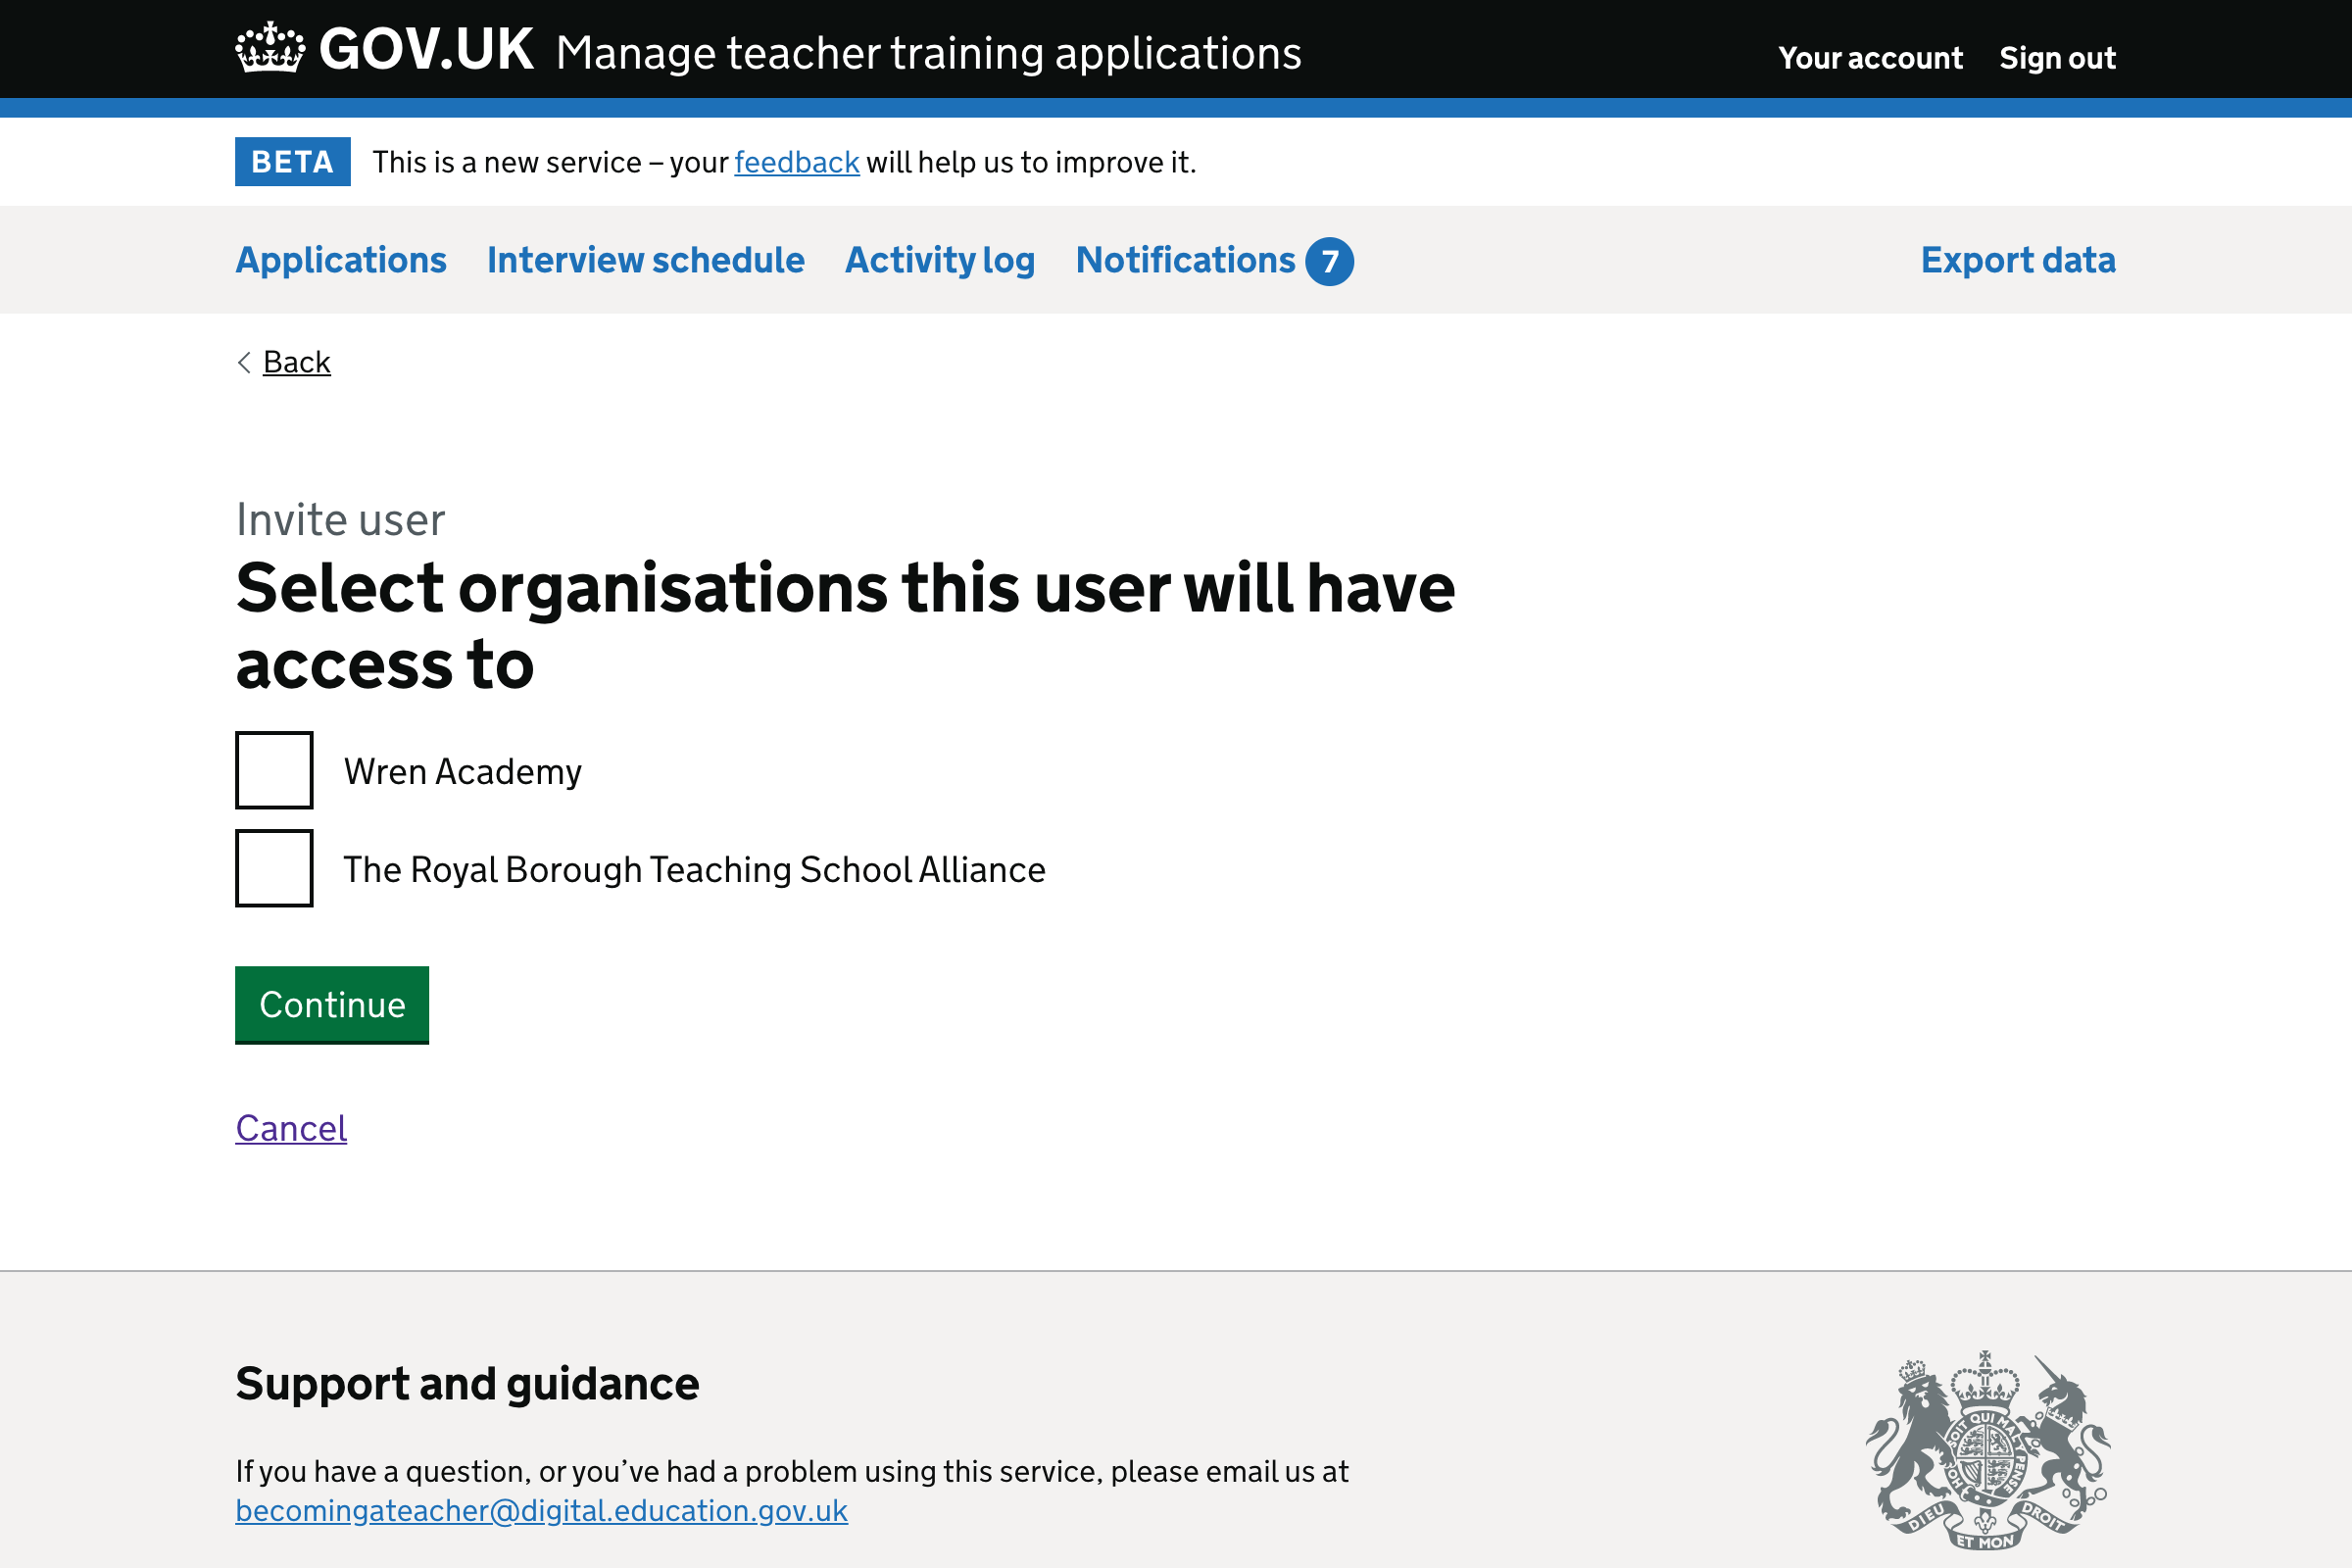 Screenshot of organisational access form.